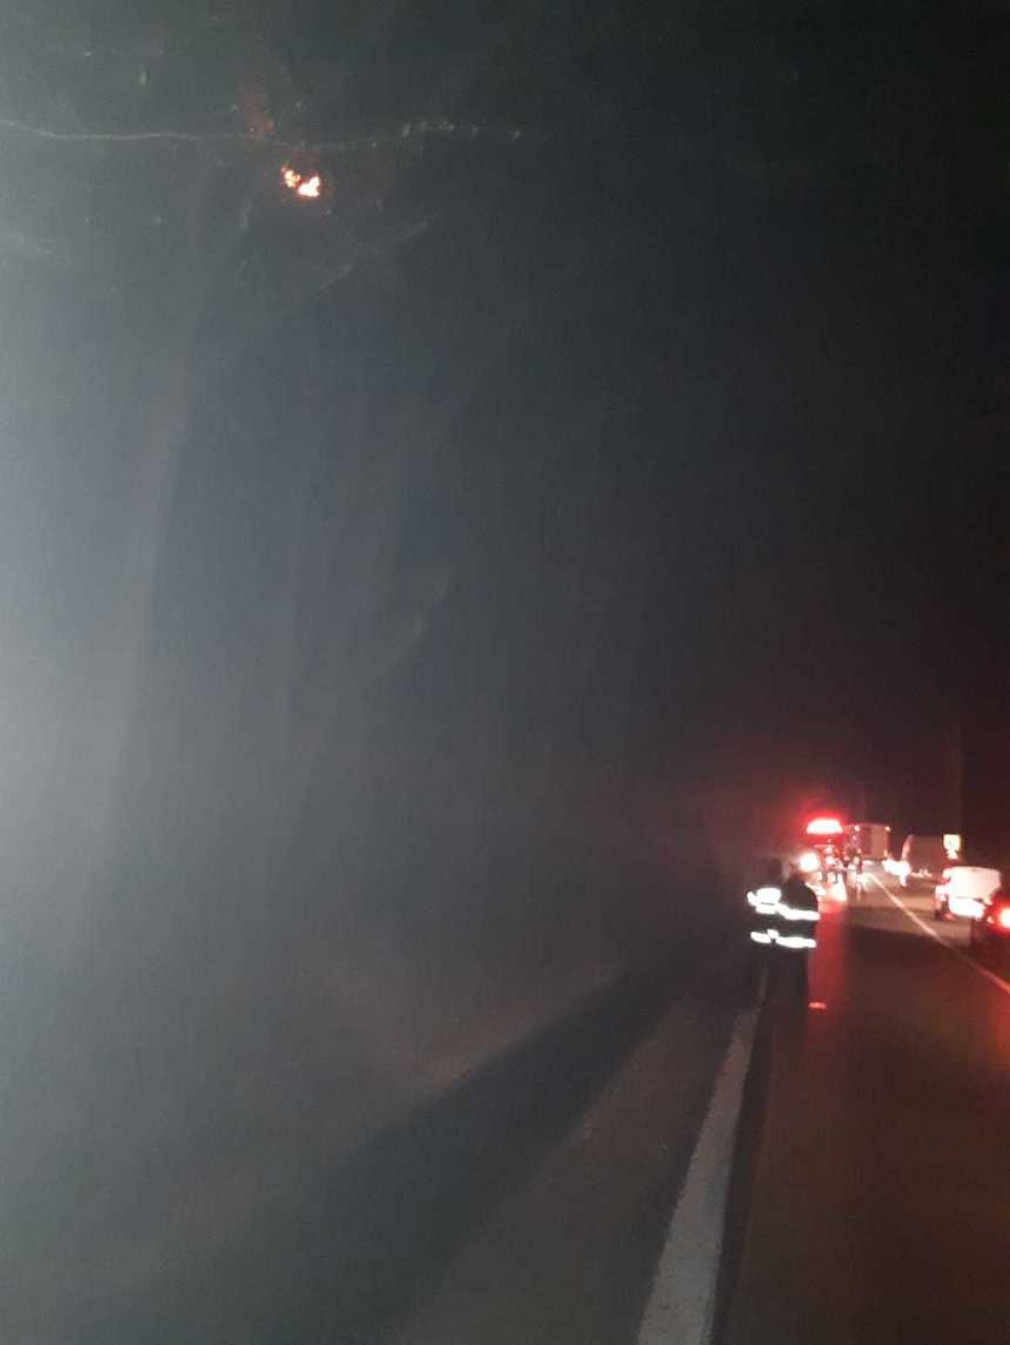 Traficul pe DN 7, restricţionat din cauza unui incendiu de pădure care se manifesta în apropierea şoselei, a fost reluat